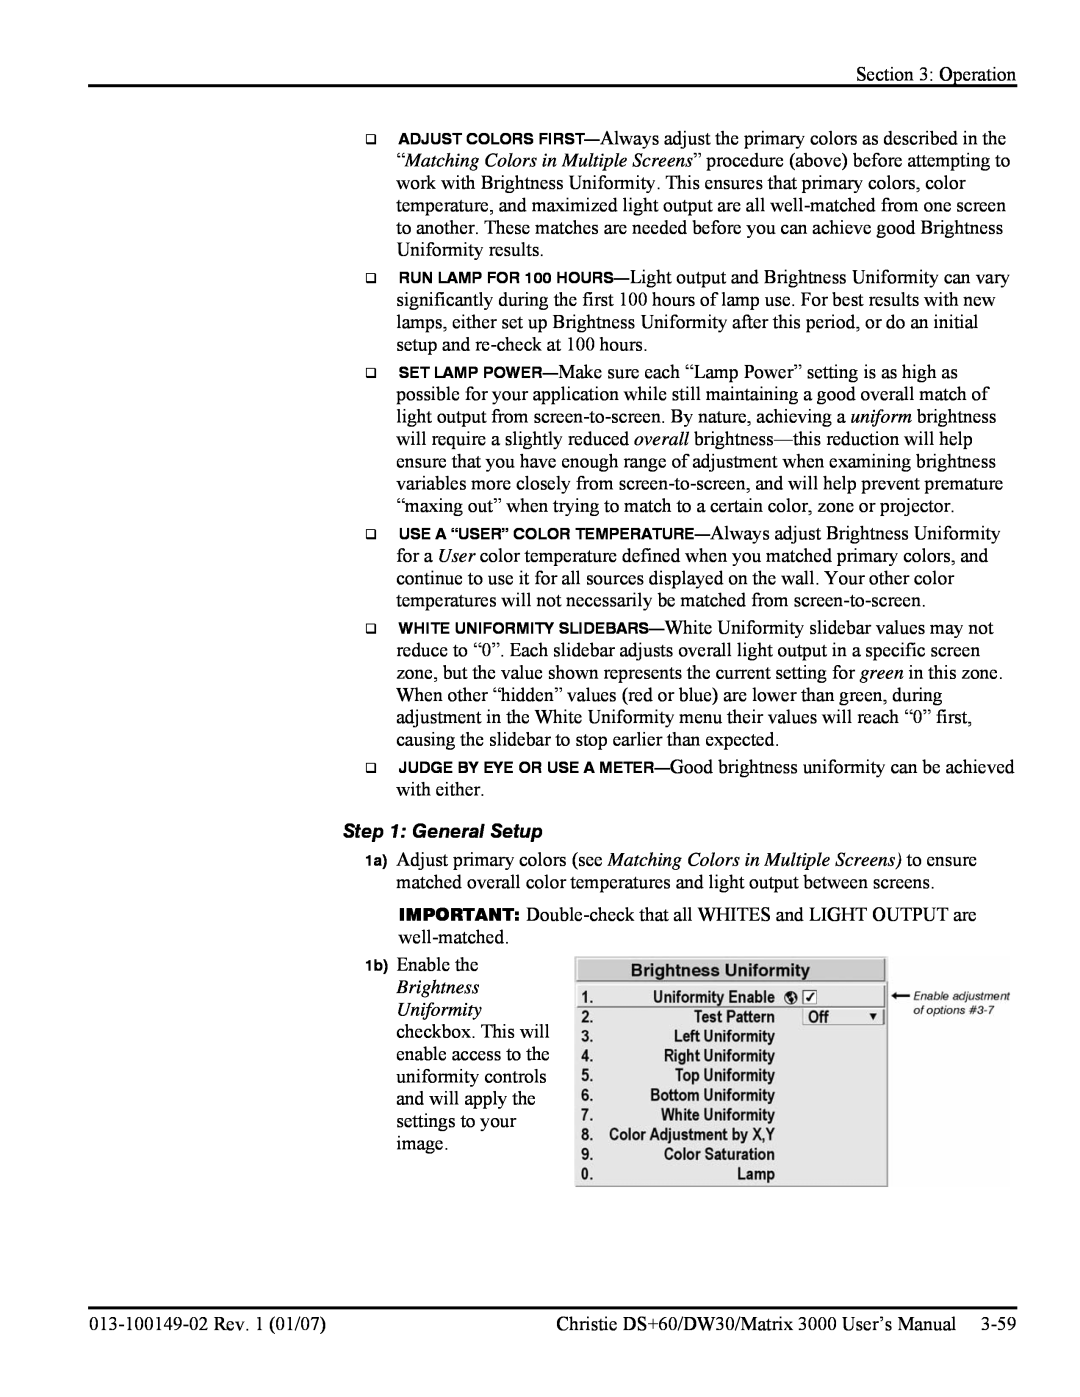 Texas Instruments MATRIX 3000, DW30 user manual General Setup 